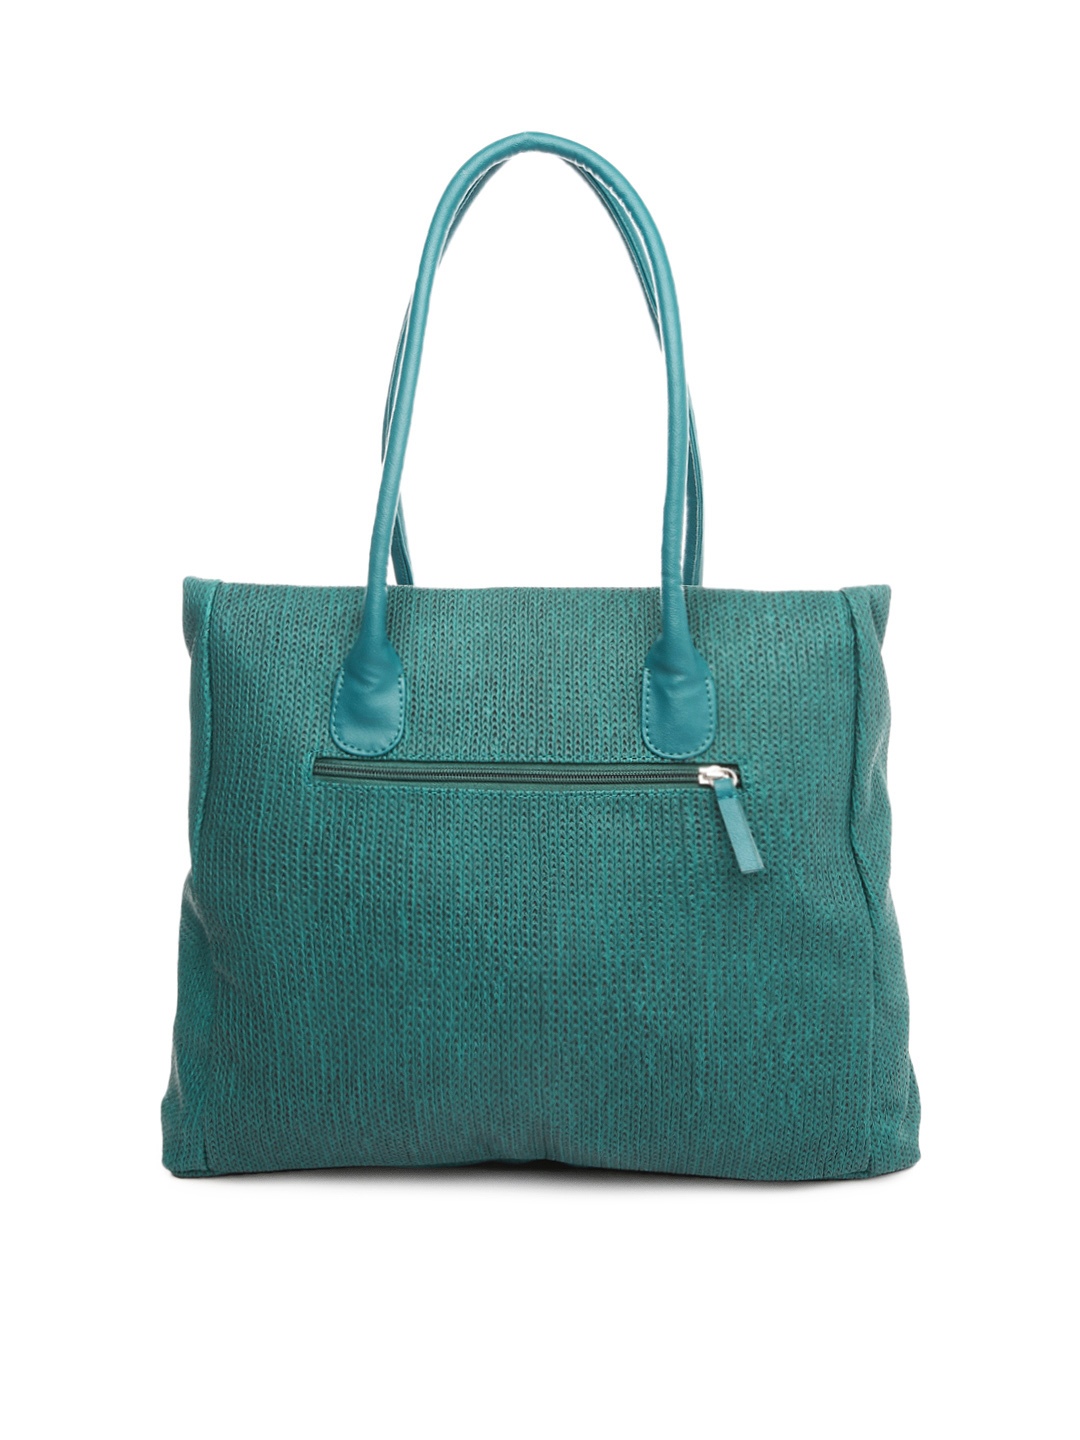 Myntra Baggit Green Shoulder Bag 721139 | Buy Myntra Baggit Handbags at best price online. All ...